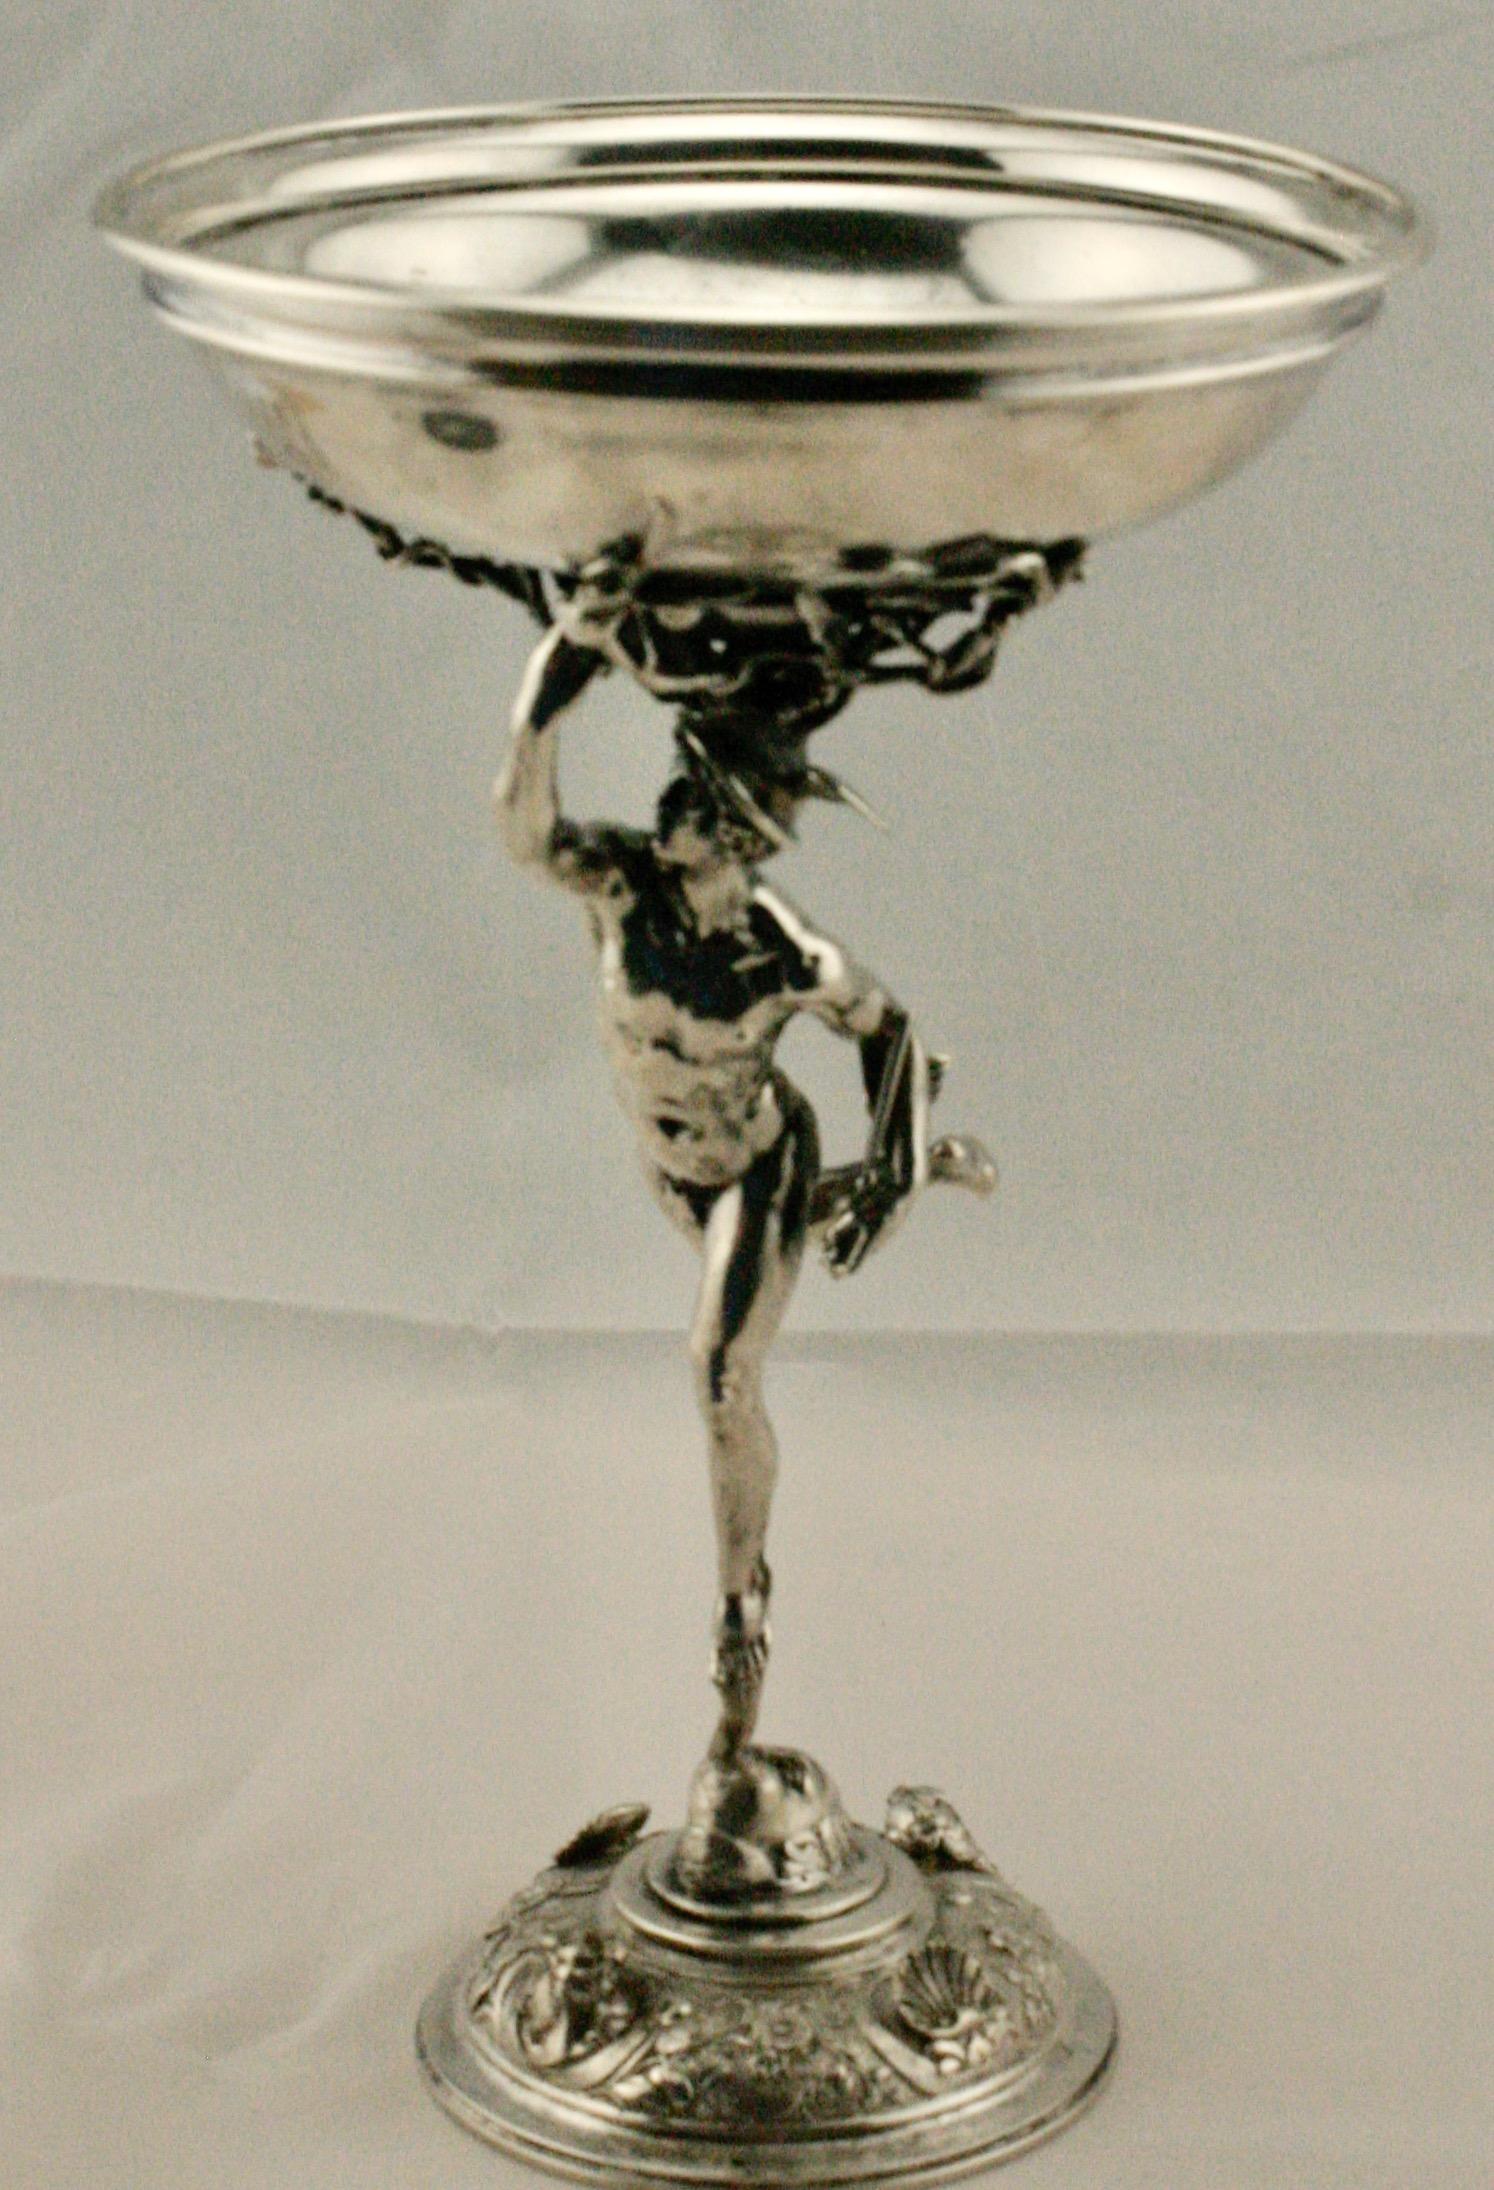 Italienisches Silberkompott aus dem späten 19. Jahrhundert, mit der Marke von G. Accarisi aus Firenze/Florenz. Das Kompott hat die Form einer flachen Schale, die von einem Modell des Merkur gehalten wird, das auf der Merkur-Skulptur von Giambologna